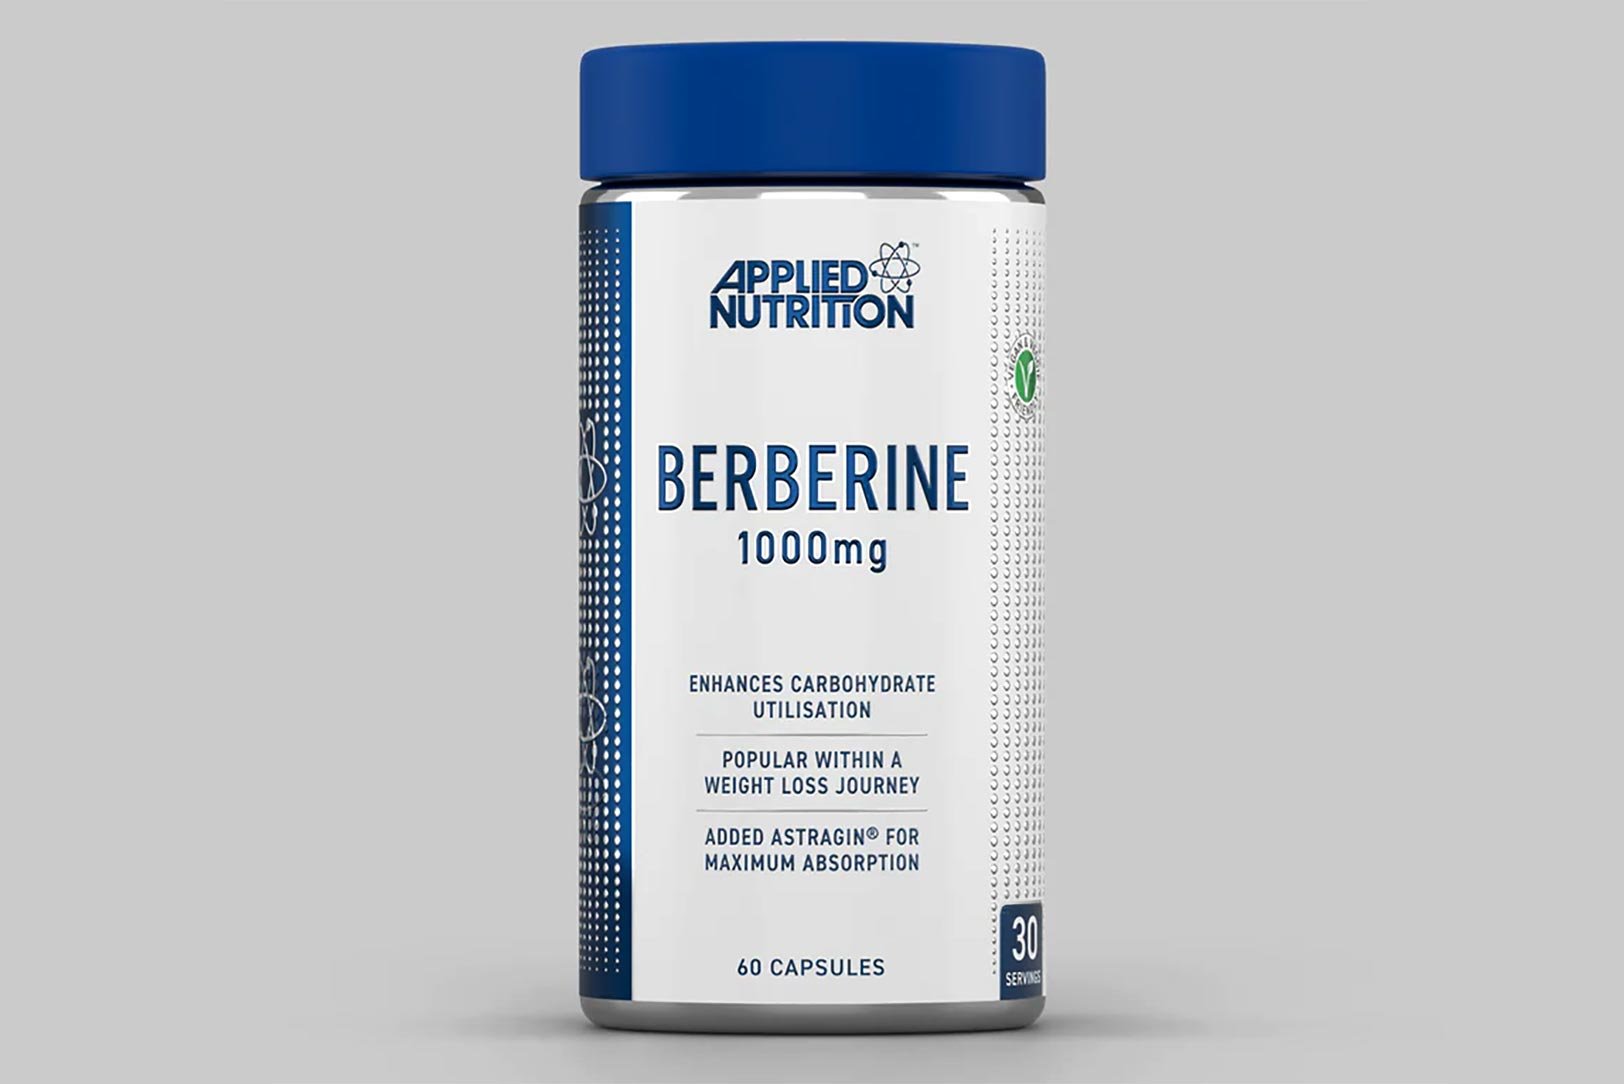 Applied Nutrition Berberine